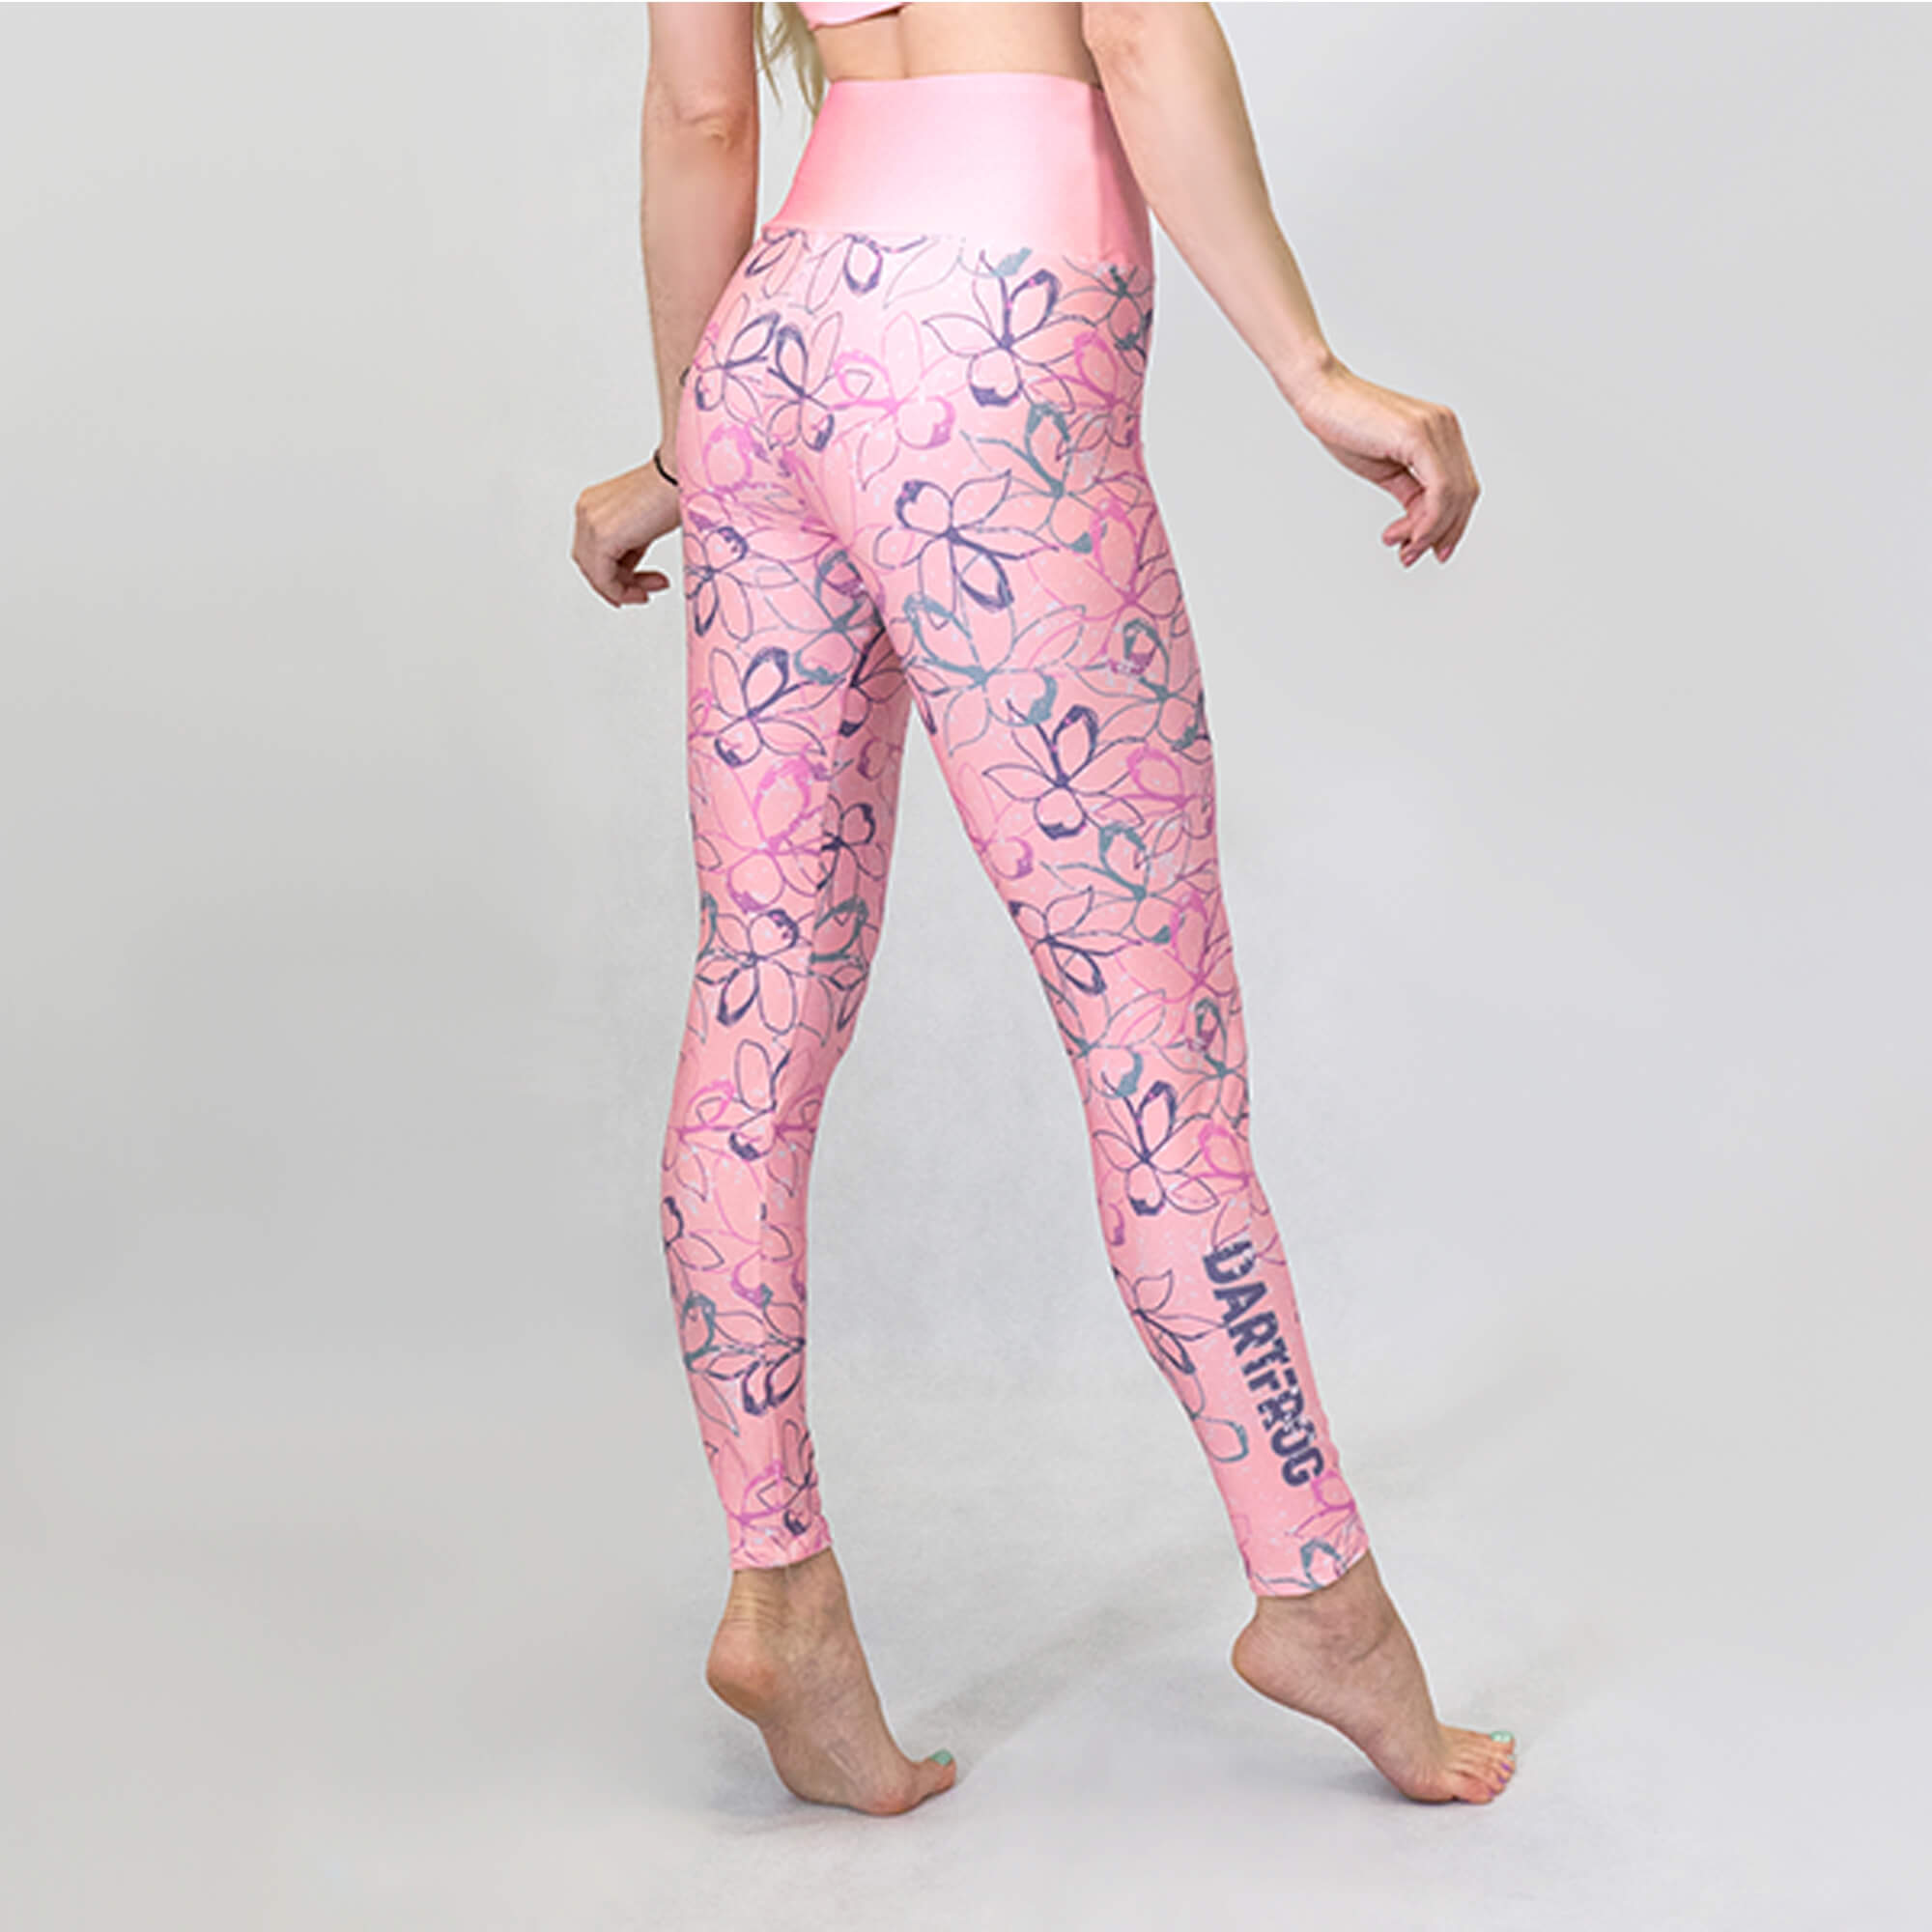 Light Pink Yoga Leggings Yoga Leggings Women's Leggings Pink Leggings Yoga  Pants 